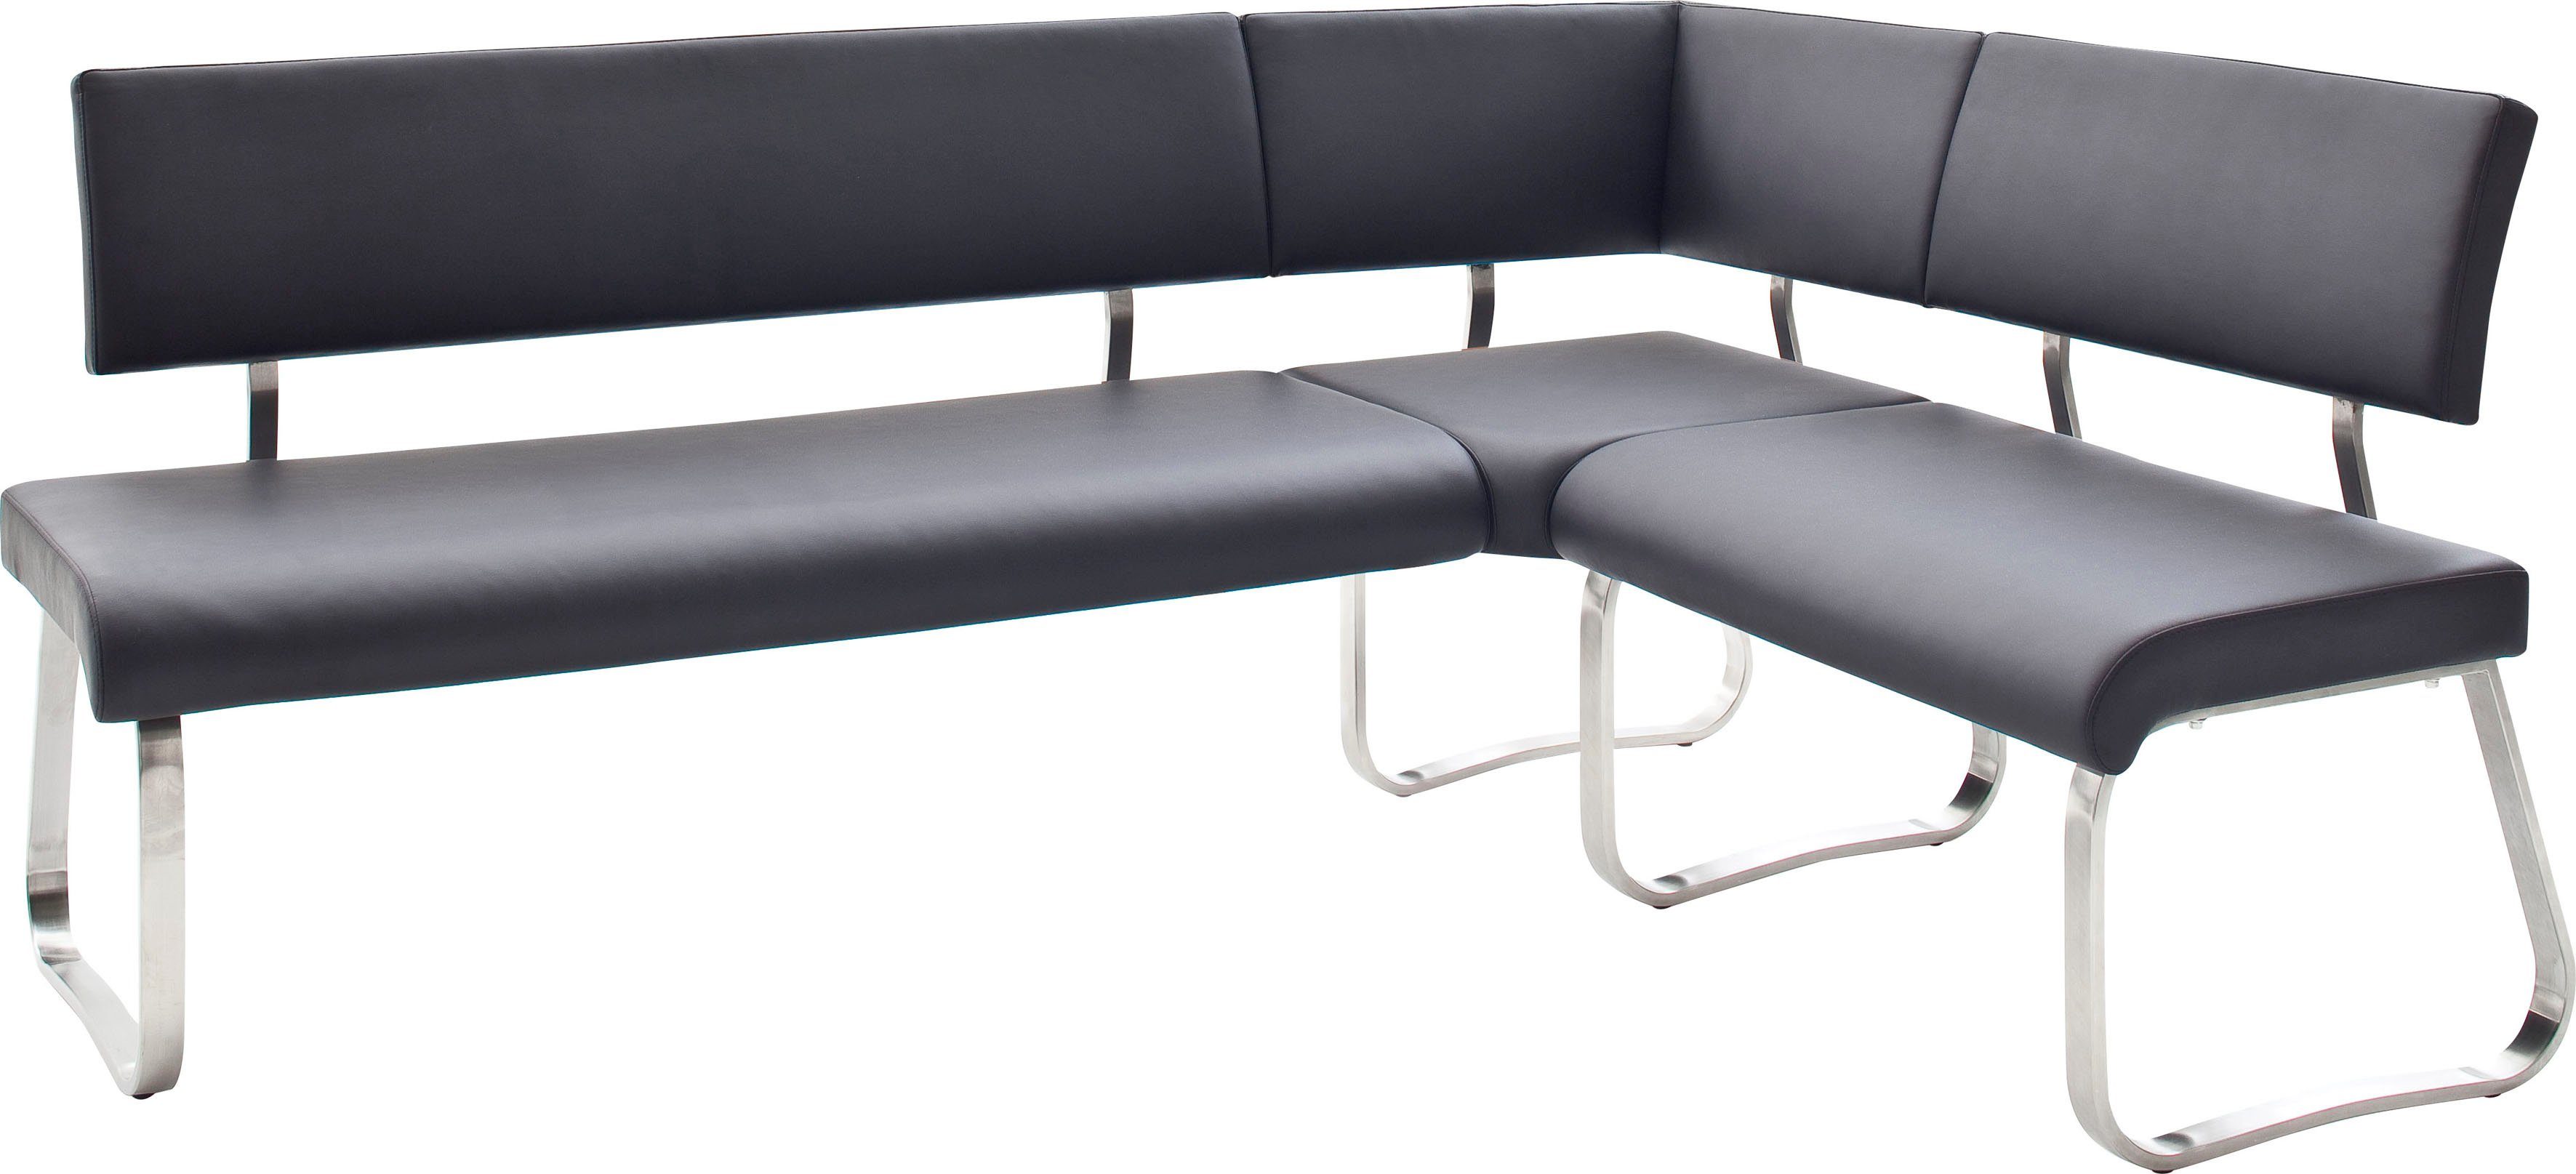 MCA furniture Eckbank Arco, Eckbank frei im Raum stellbar, Breite 200 cm, belastbar bis 500 kg Schwarz